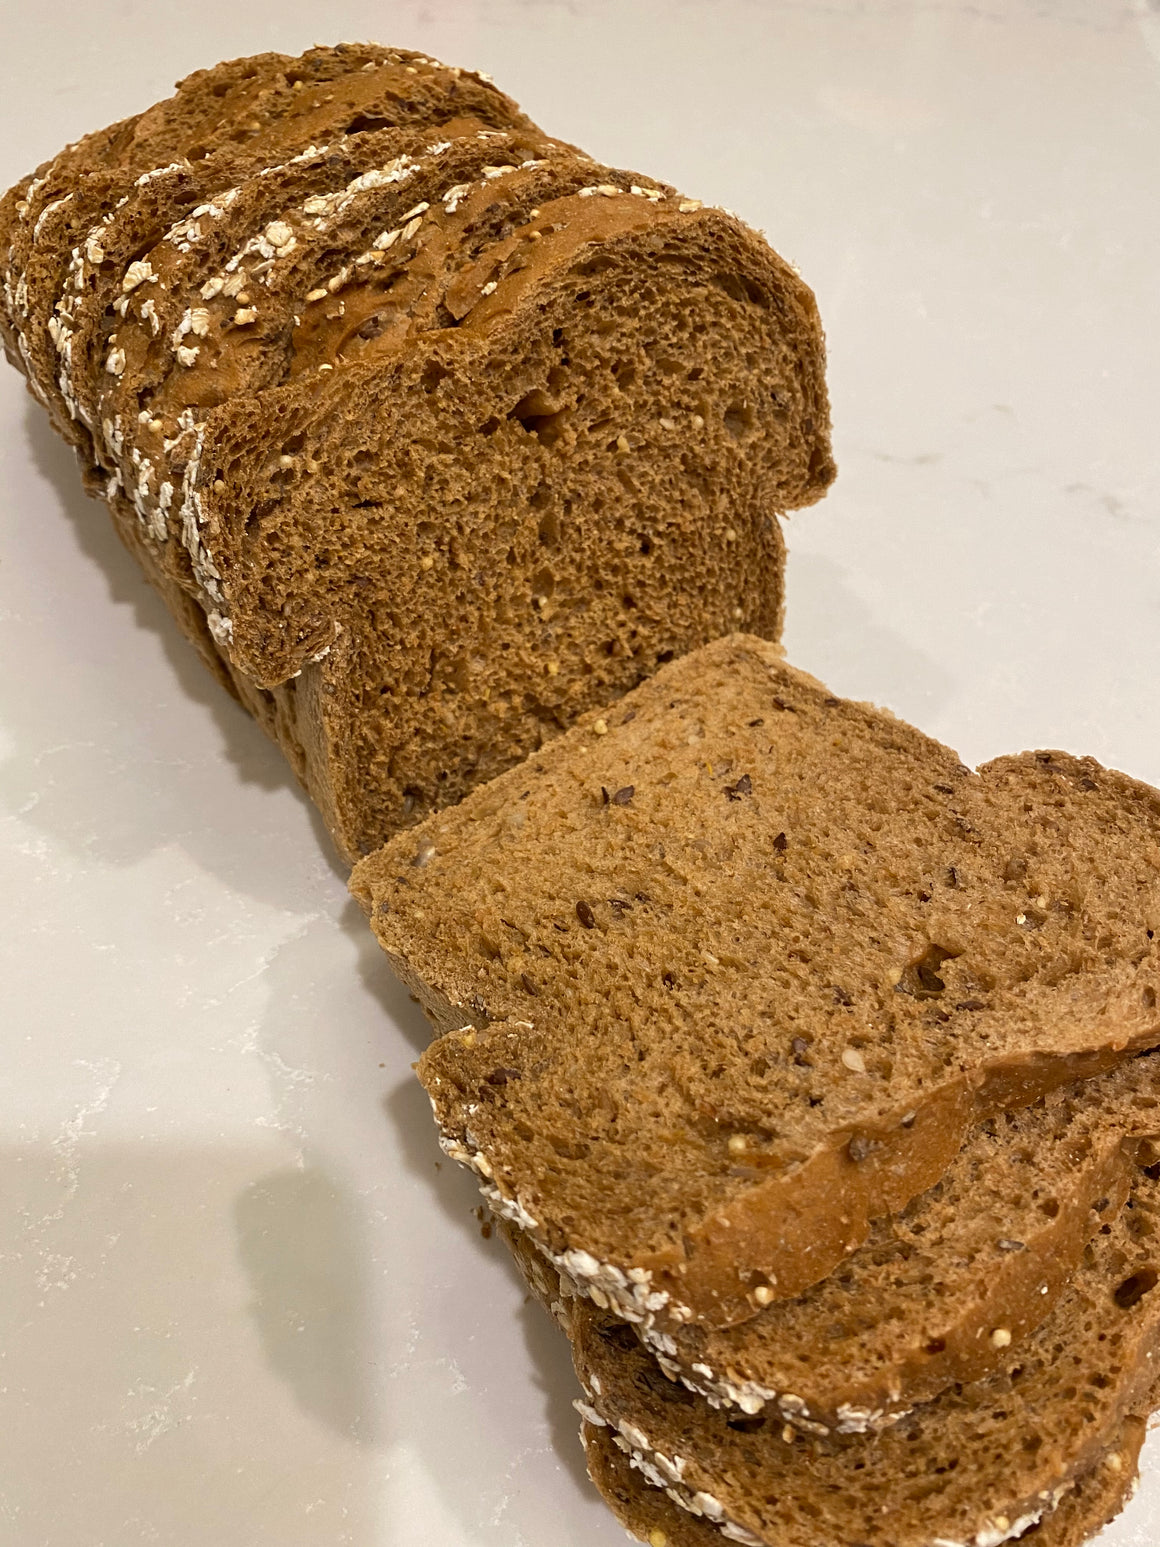 D'Anns 8 Grain Bread